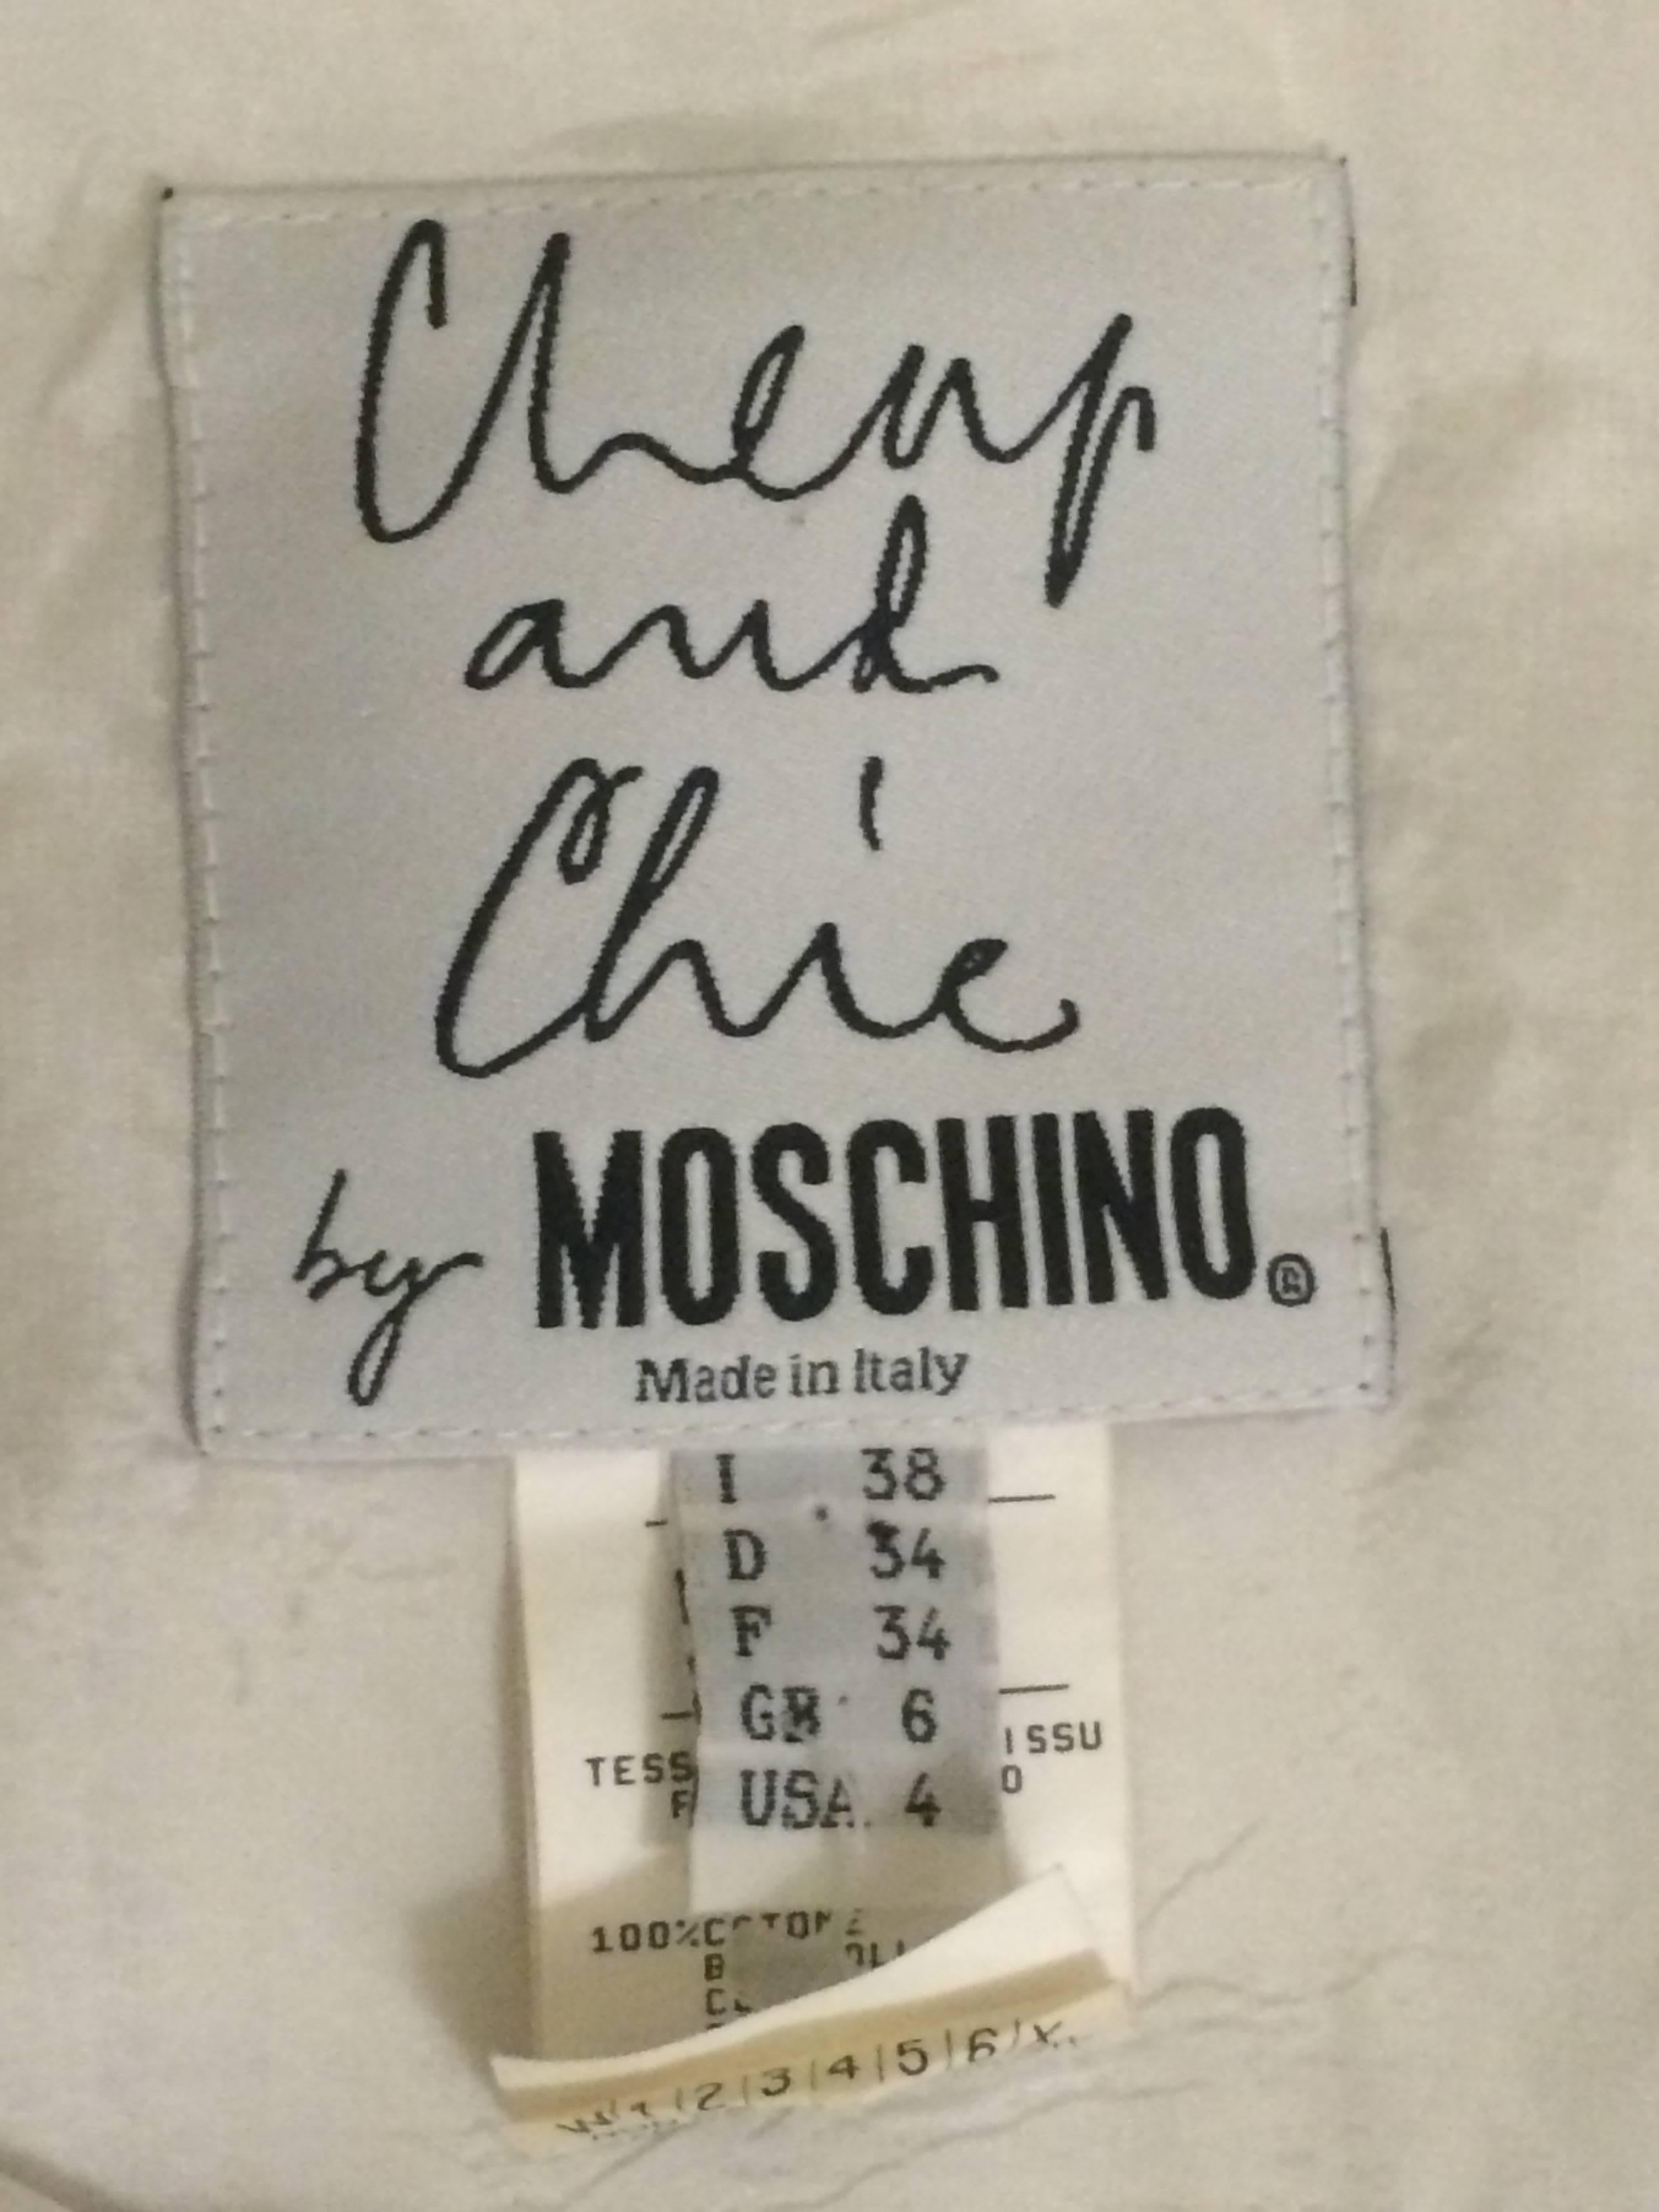 moschino checkered skirt